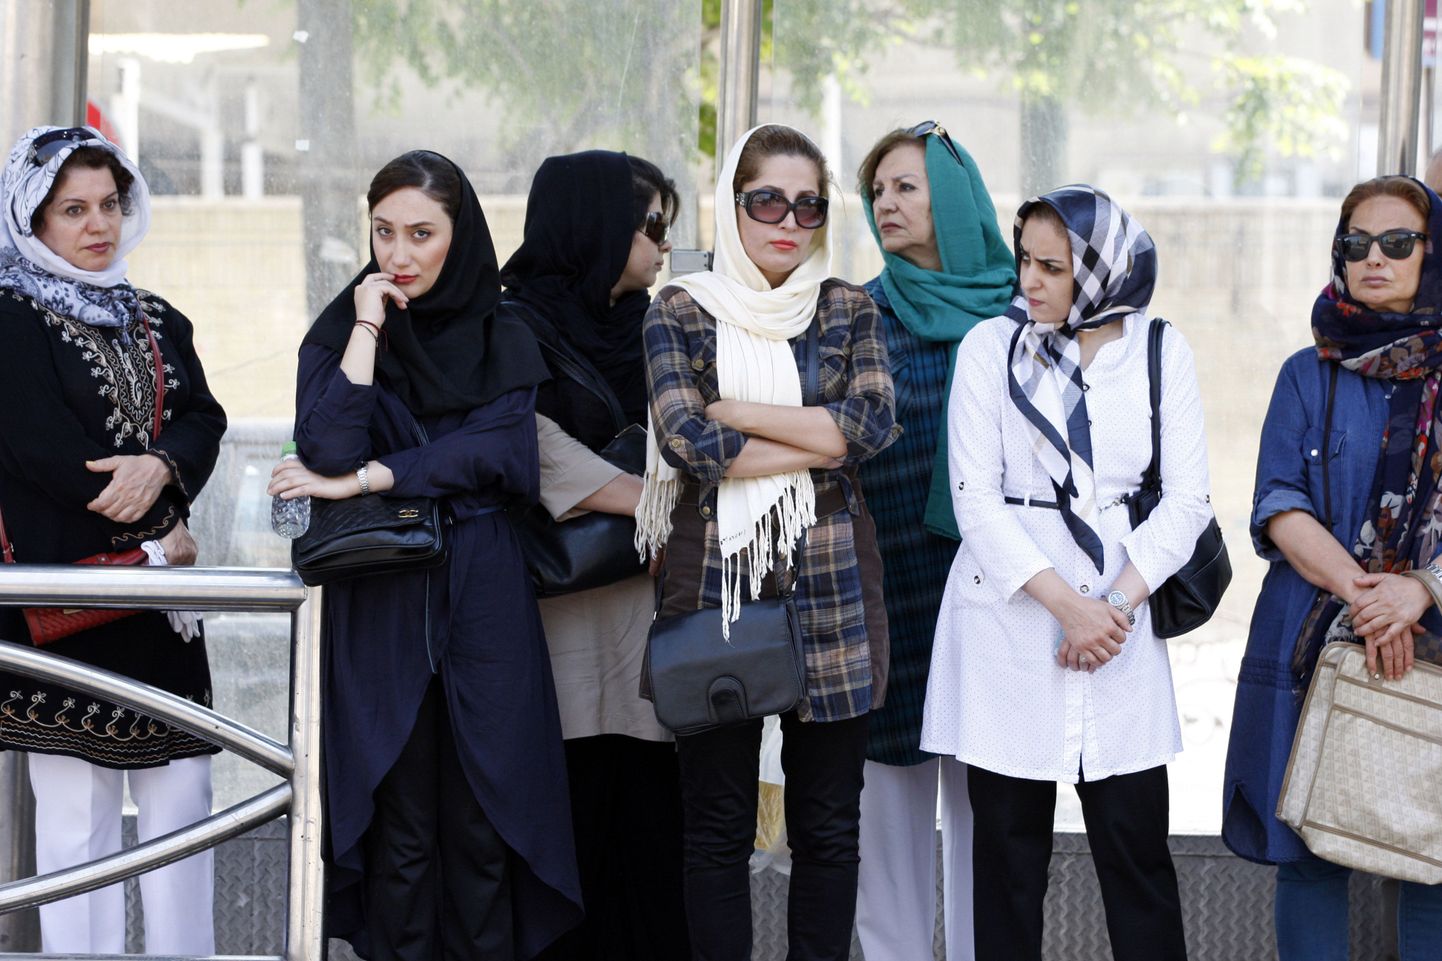 Iraani naised bussipeatuses Iraani pealinnas Teheranis.